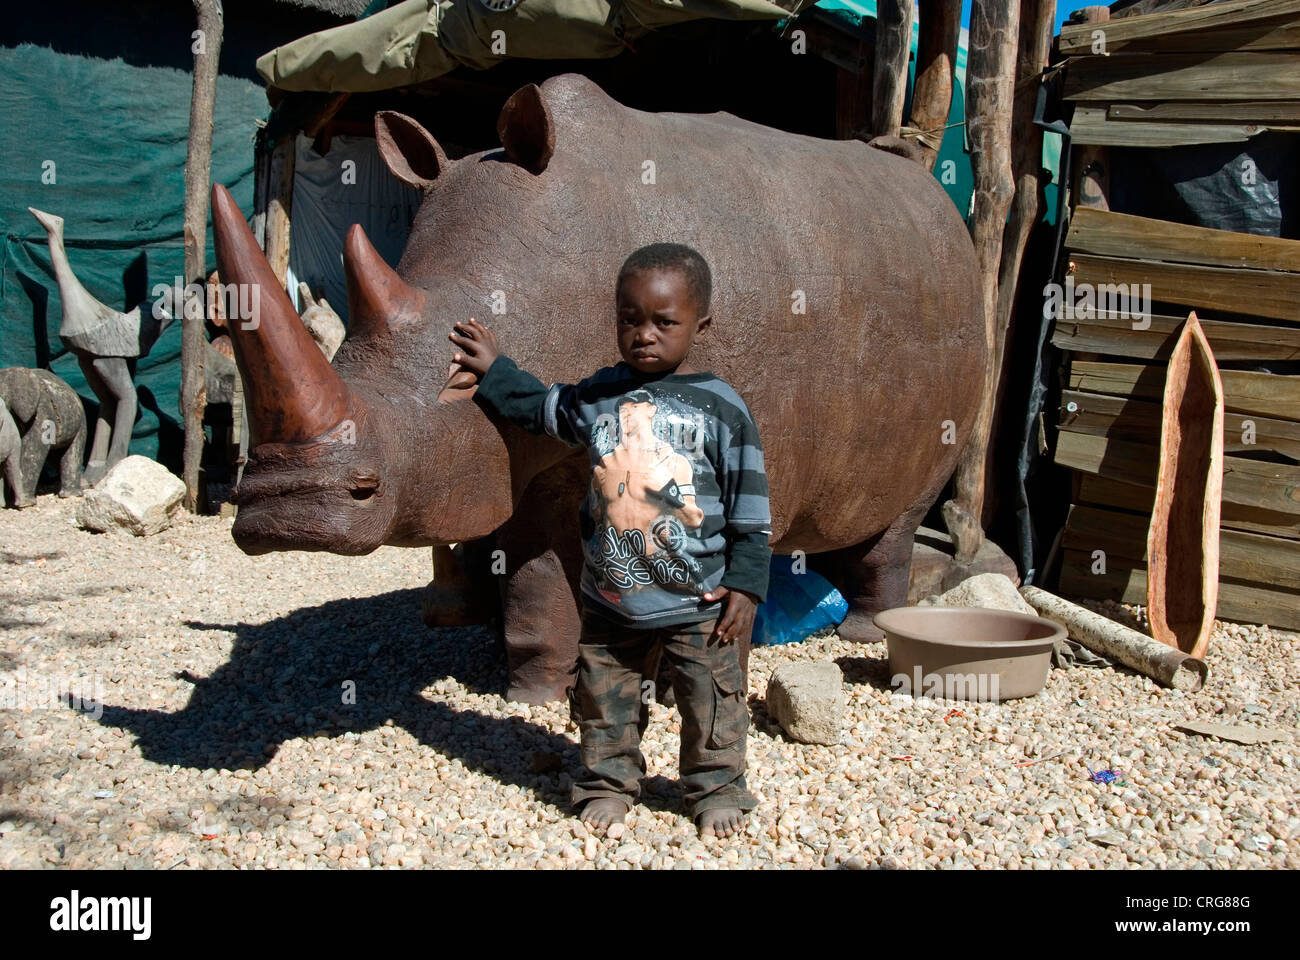 Figuras de madera, el muchacho en frente de un rinoceronte, Namibia, Okahandja Foto de stock